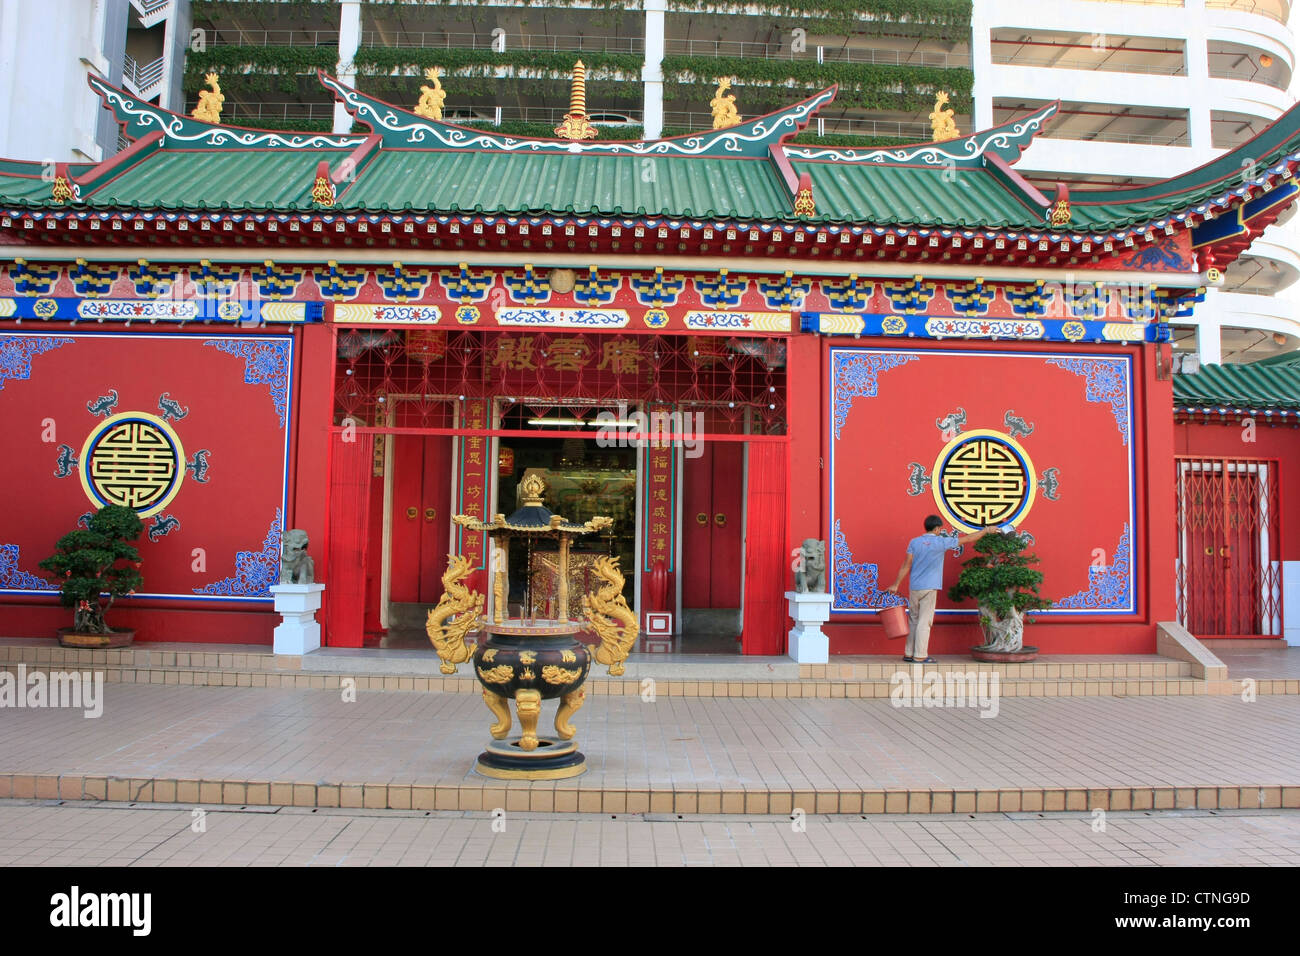 Chinese buddhist temple, Bandar Seri Begawan, Brunei, Southeast Asia Stock Photo